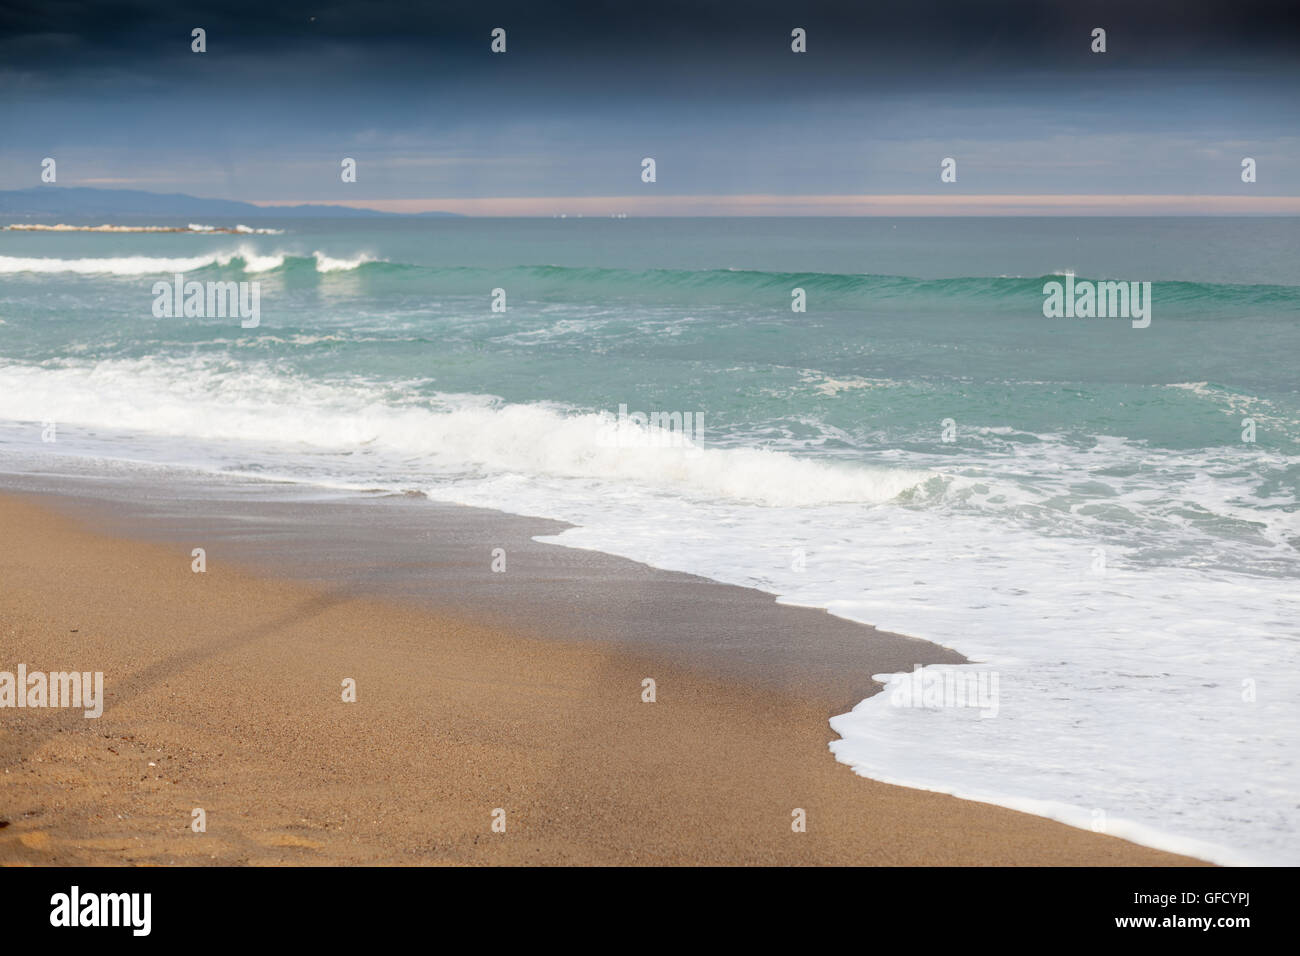 Marée basse sur la plage, Barcelone, Catalogne, image Spaincolor, canon 5DmkII Banque D'Images